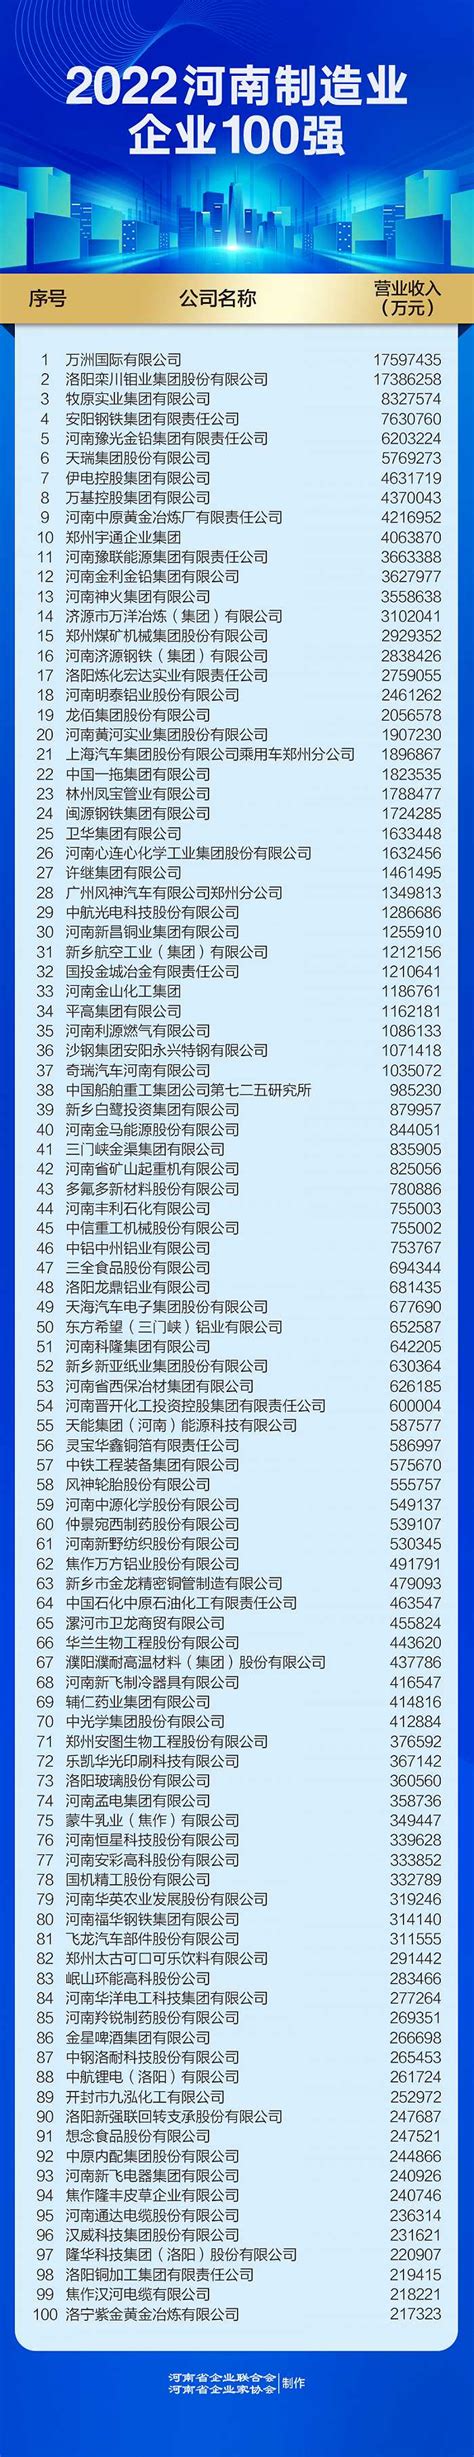 2021河南企业100强名单发布 百亿级企业突破50家_社会热点_社会频道_云南网